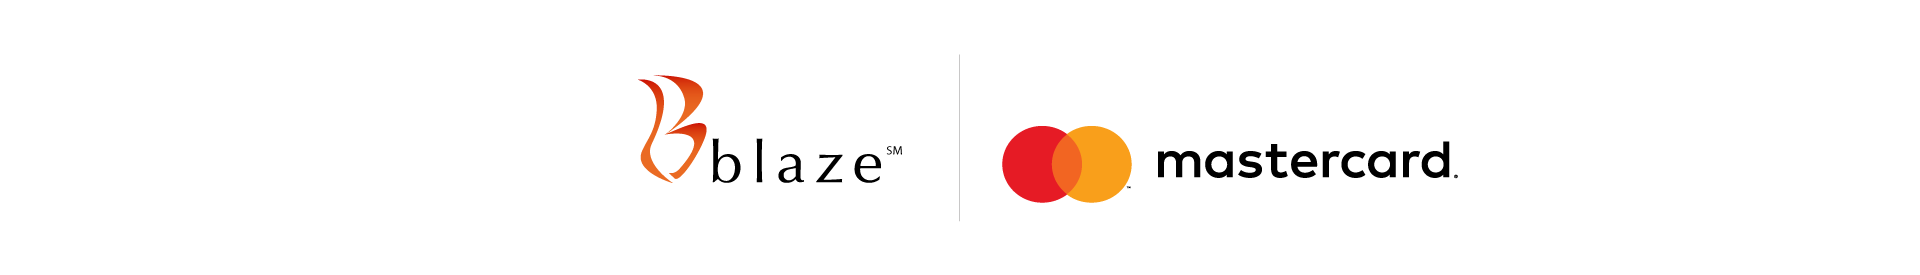 Blaze MasterCard, Cardmember Services